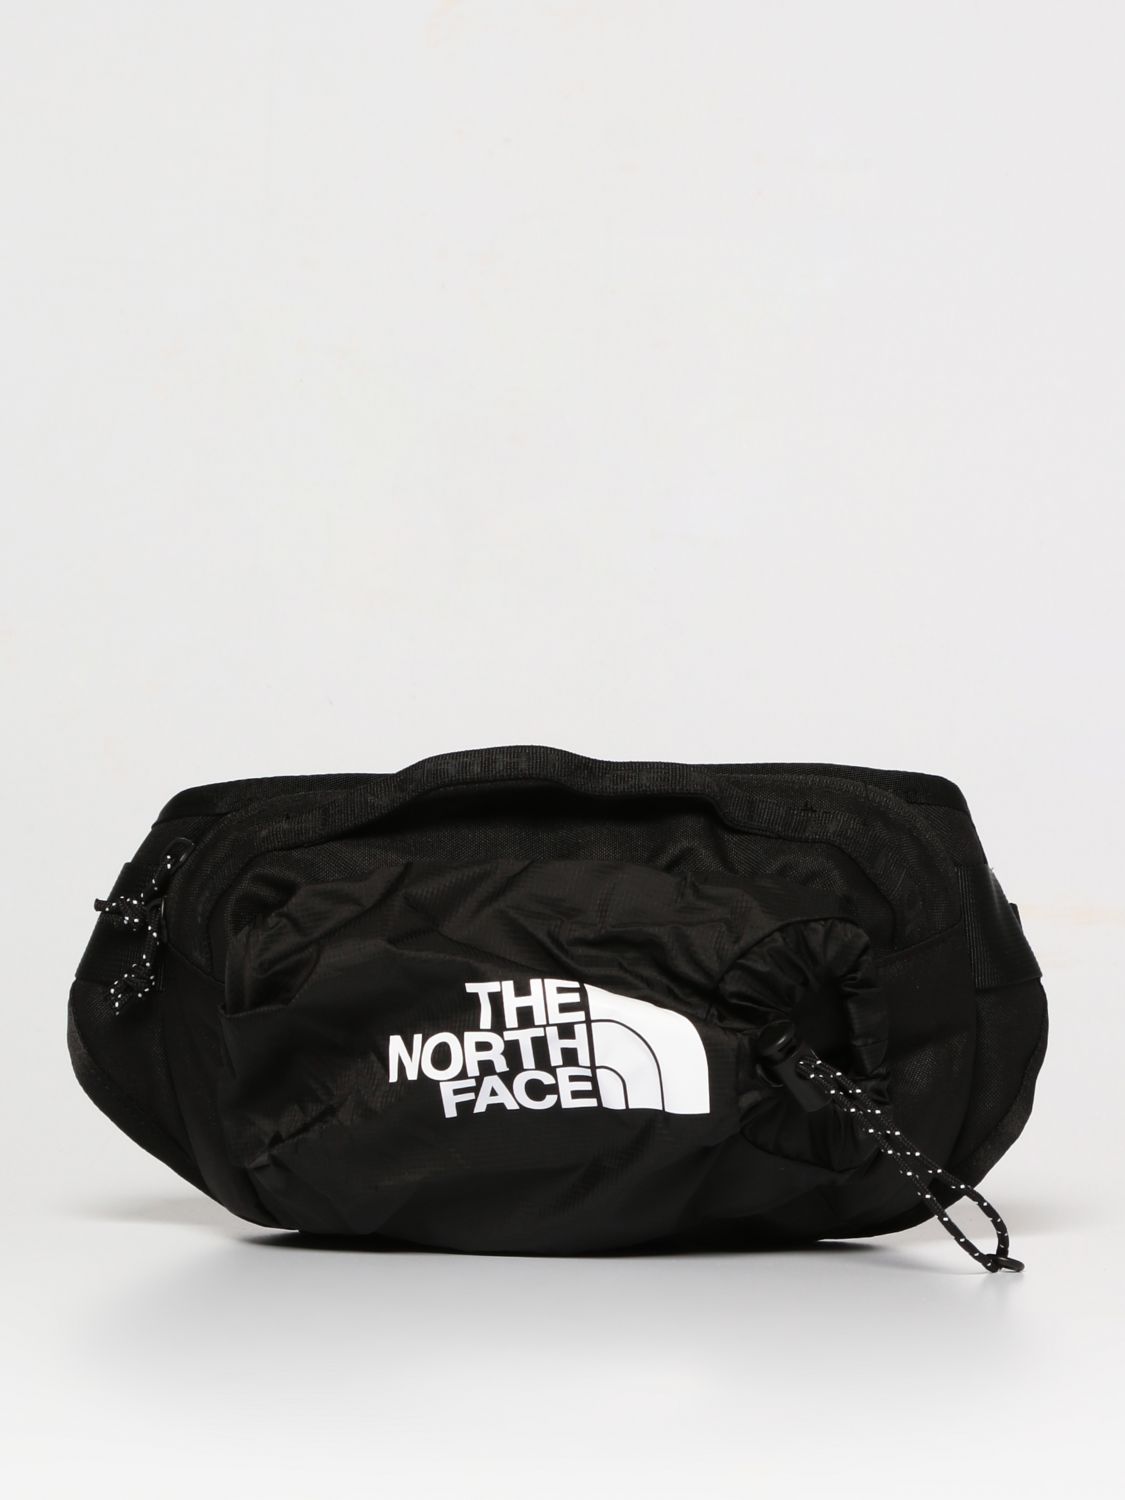 THE NORTH FACE: belt bag for man - Black | The North Face belt bag ...